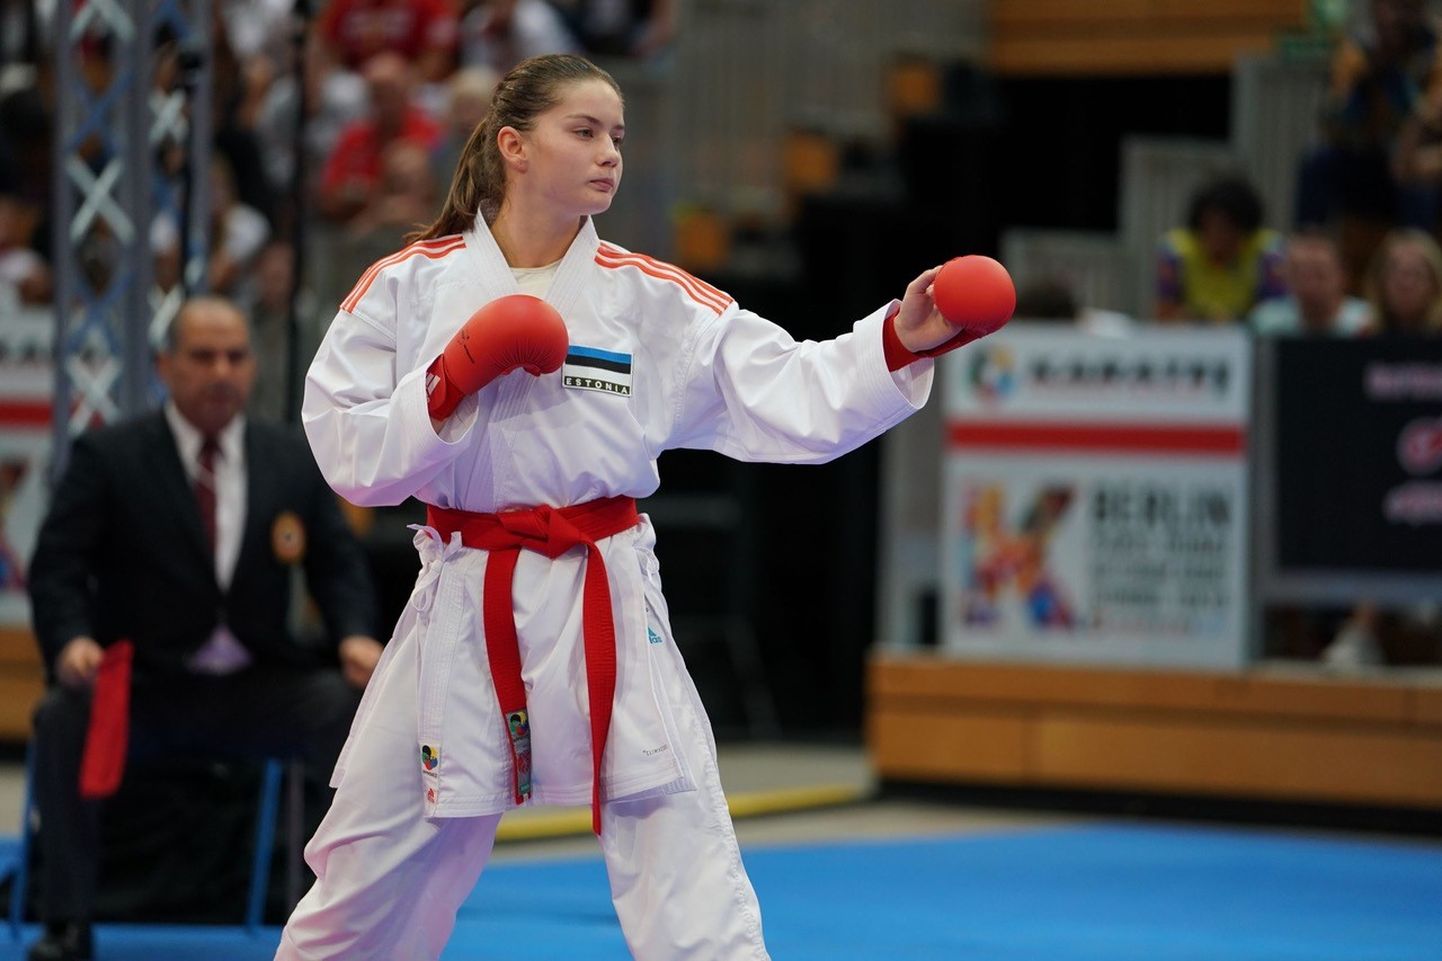 Üks stipendiumi pälvinud sportlane, karateka Li Lirisman.